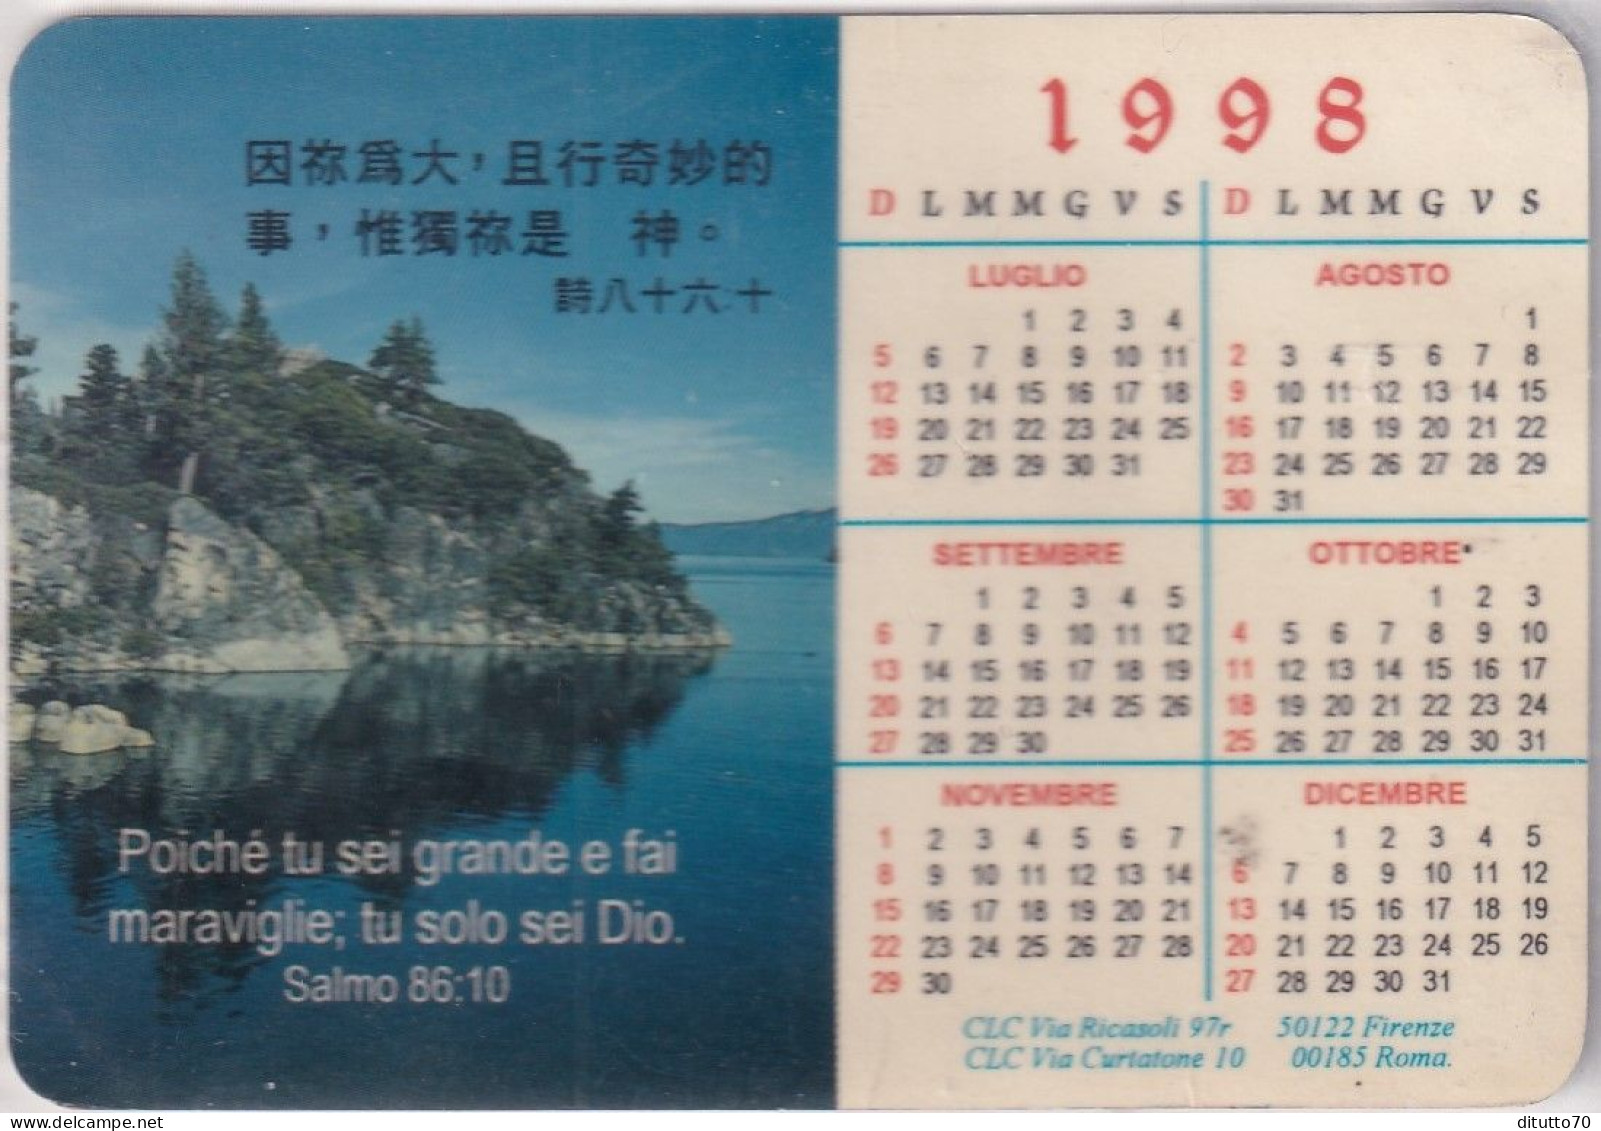 Calendarietto - Clc - Firenze - Roma - Anno 1998 - Kleinformat : 1991-00